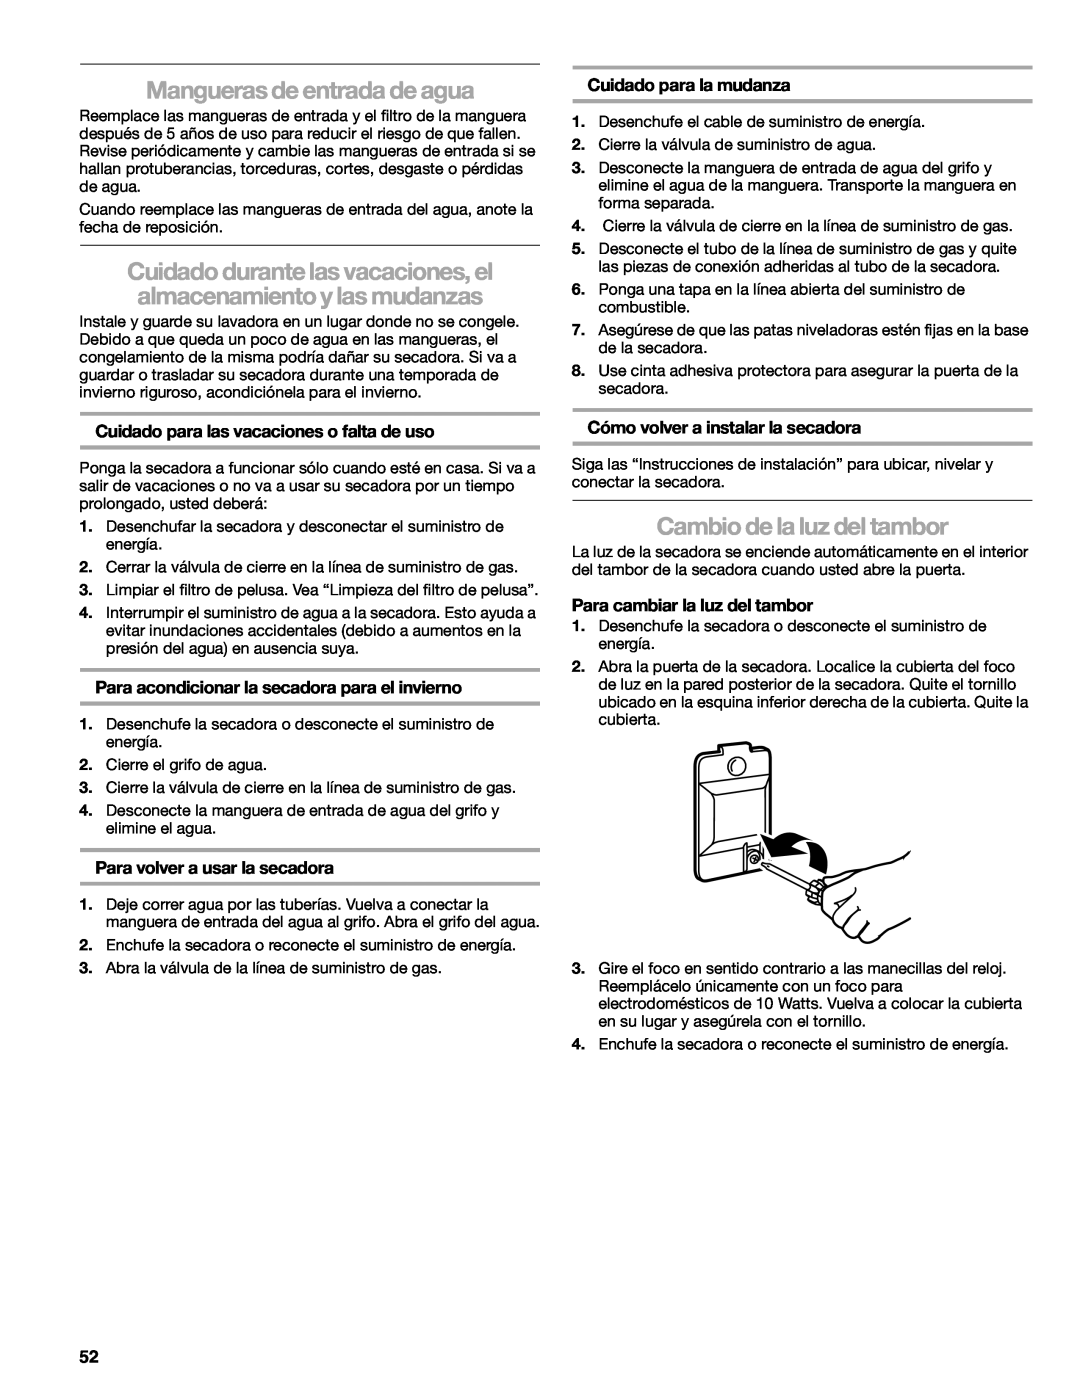 Suunto 110.9772 manual Mangueras de entrada de agua, Cambio de la luz del tambor, Cuidado para la mudanza 